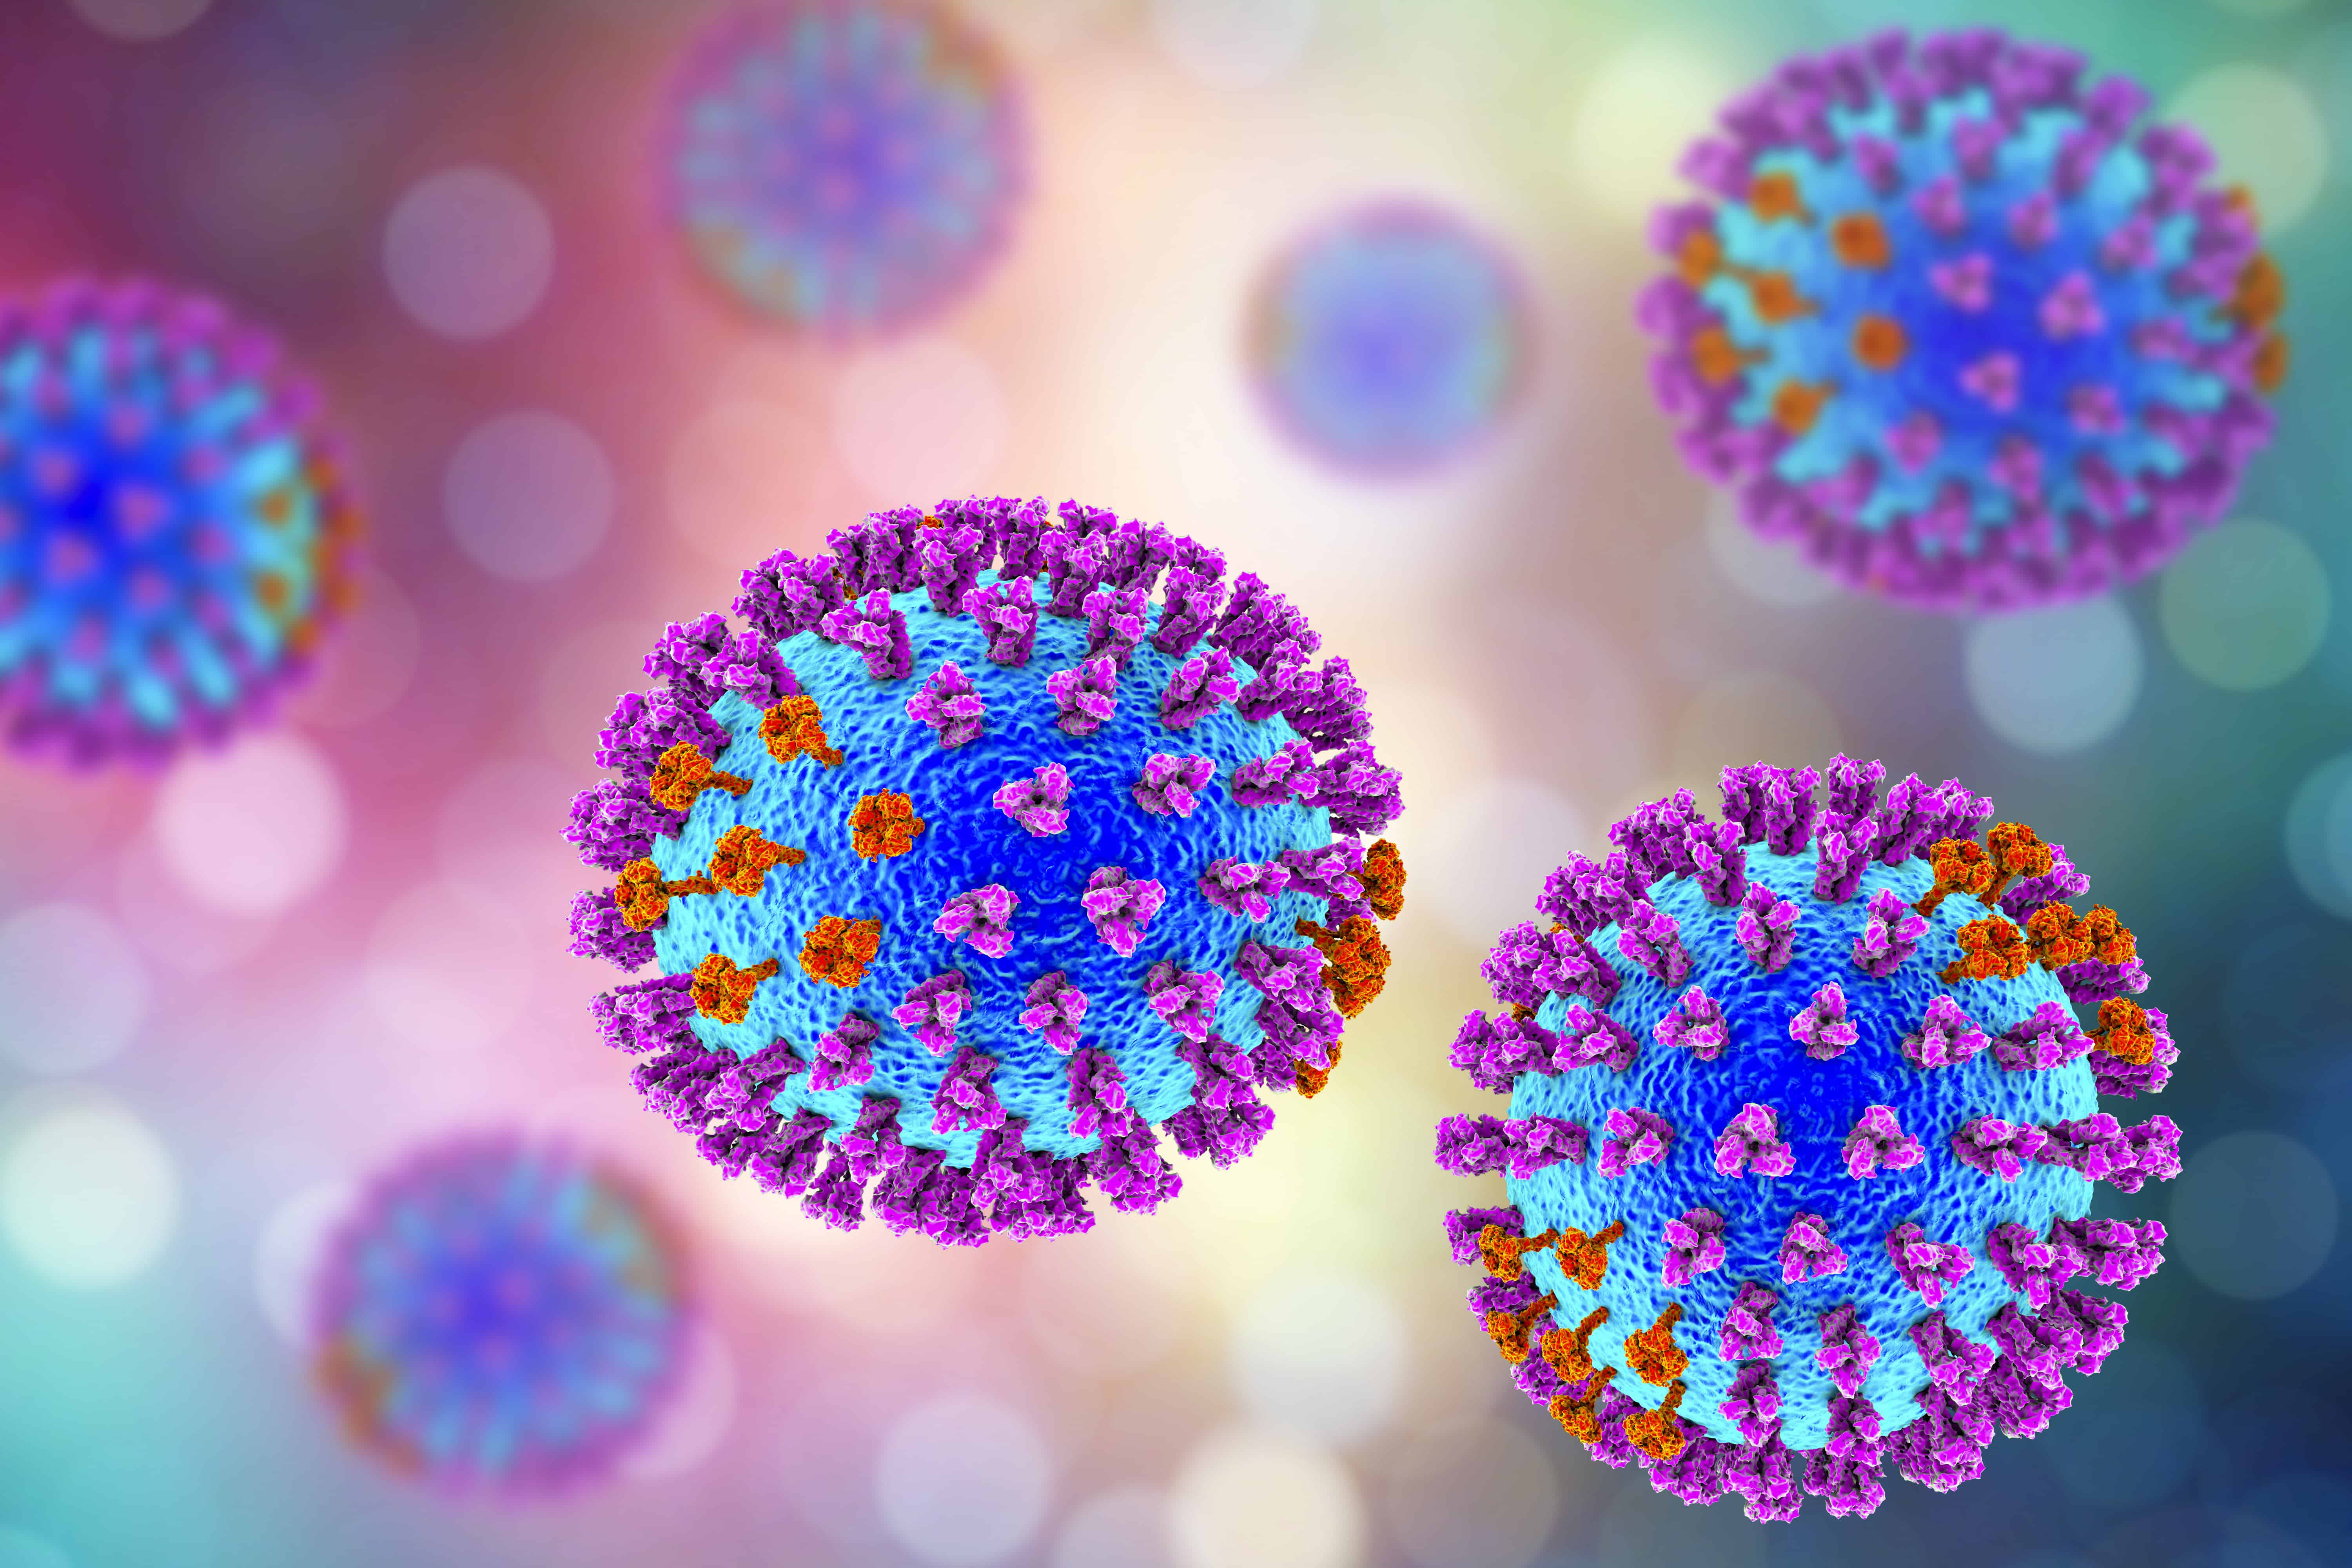 Респираторные вирусы гриппа. Вирус гриппа. Вирусы фото. Вирусы под микроскопом. Вирус гриппа под микроскопом.